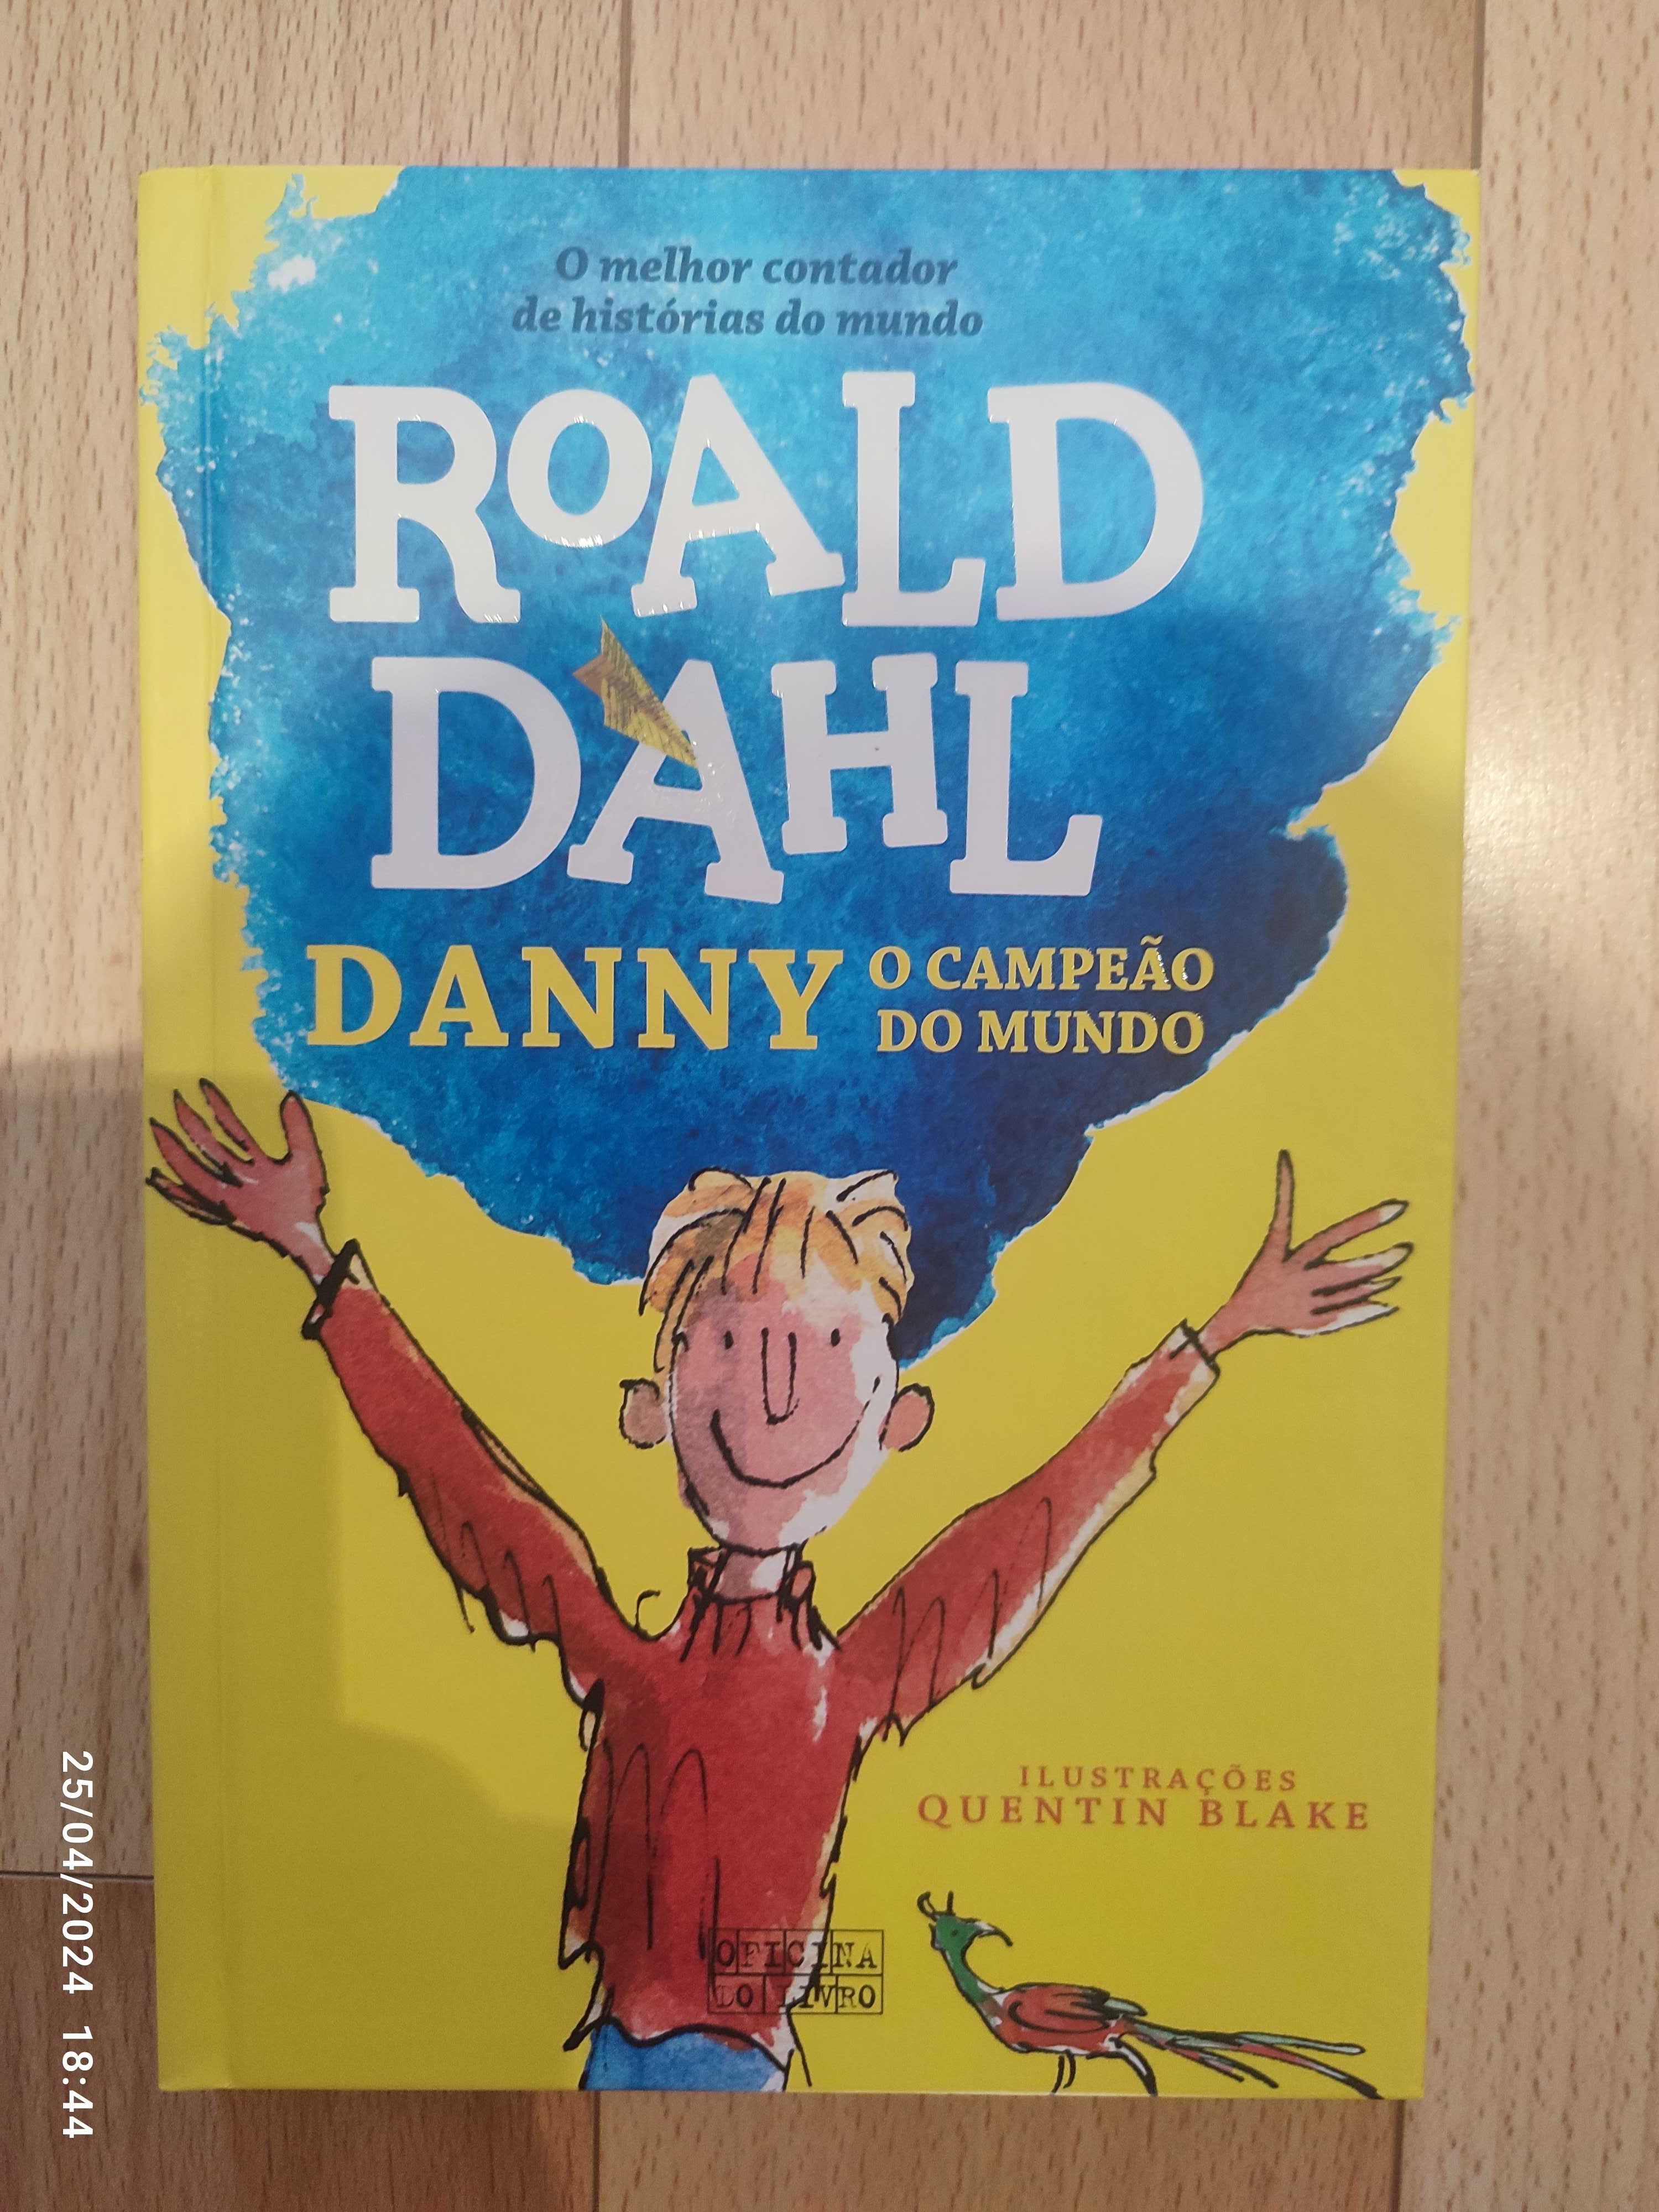 Roald Dahl - Danny o campeão do mundo